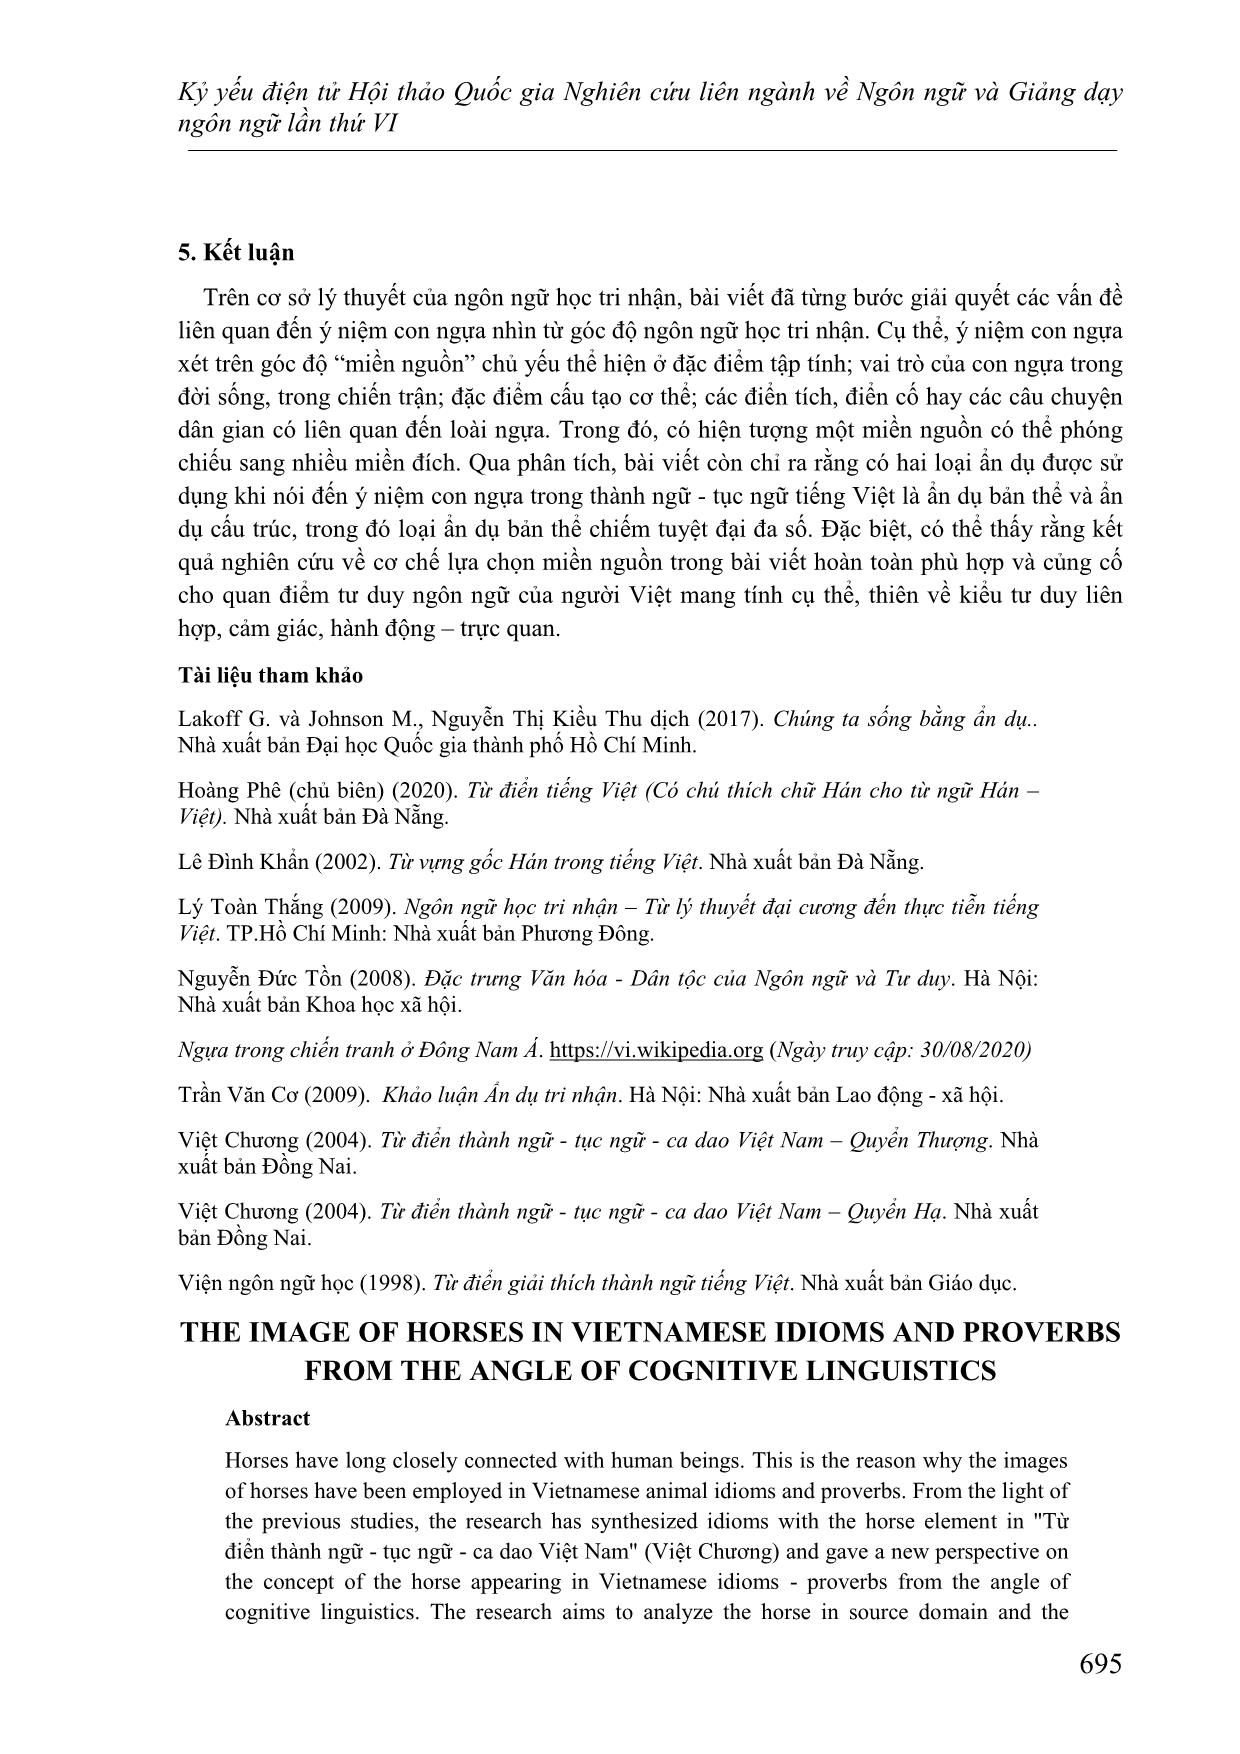 Một cách kiến giải về hình ảnh con ngựa trong thành ngữ-Tục ngữ Tiếng Việt dưới góc nhìn ngôn ngữ học tri nhận trang 9